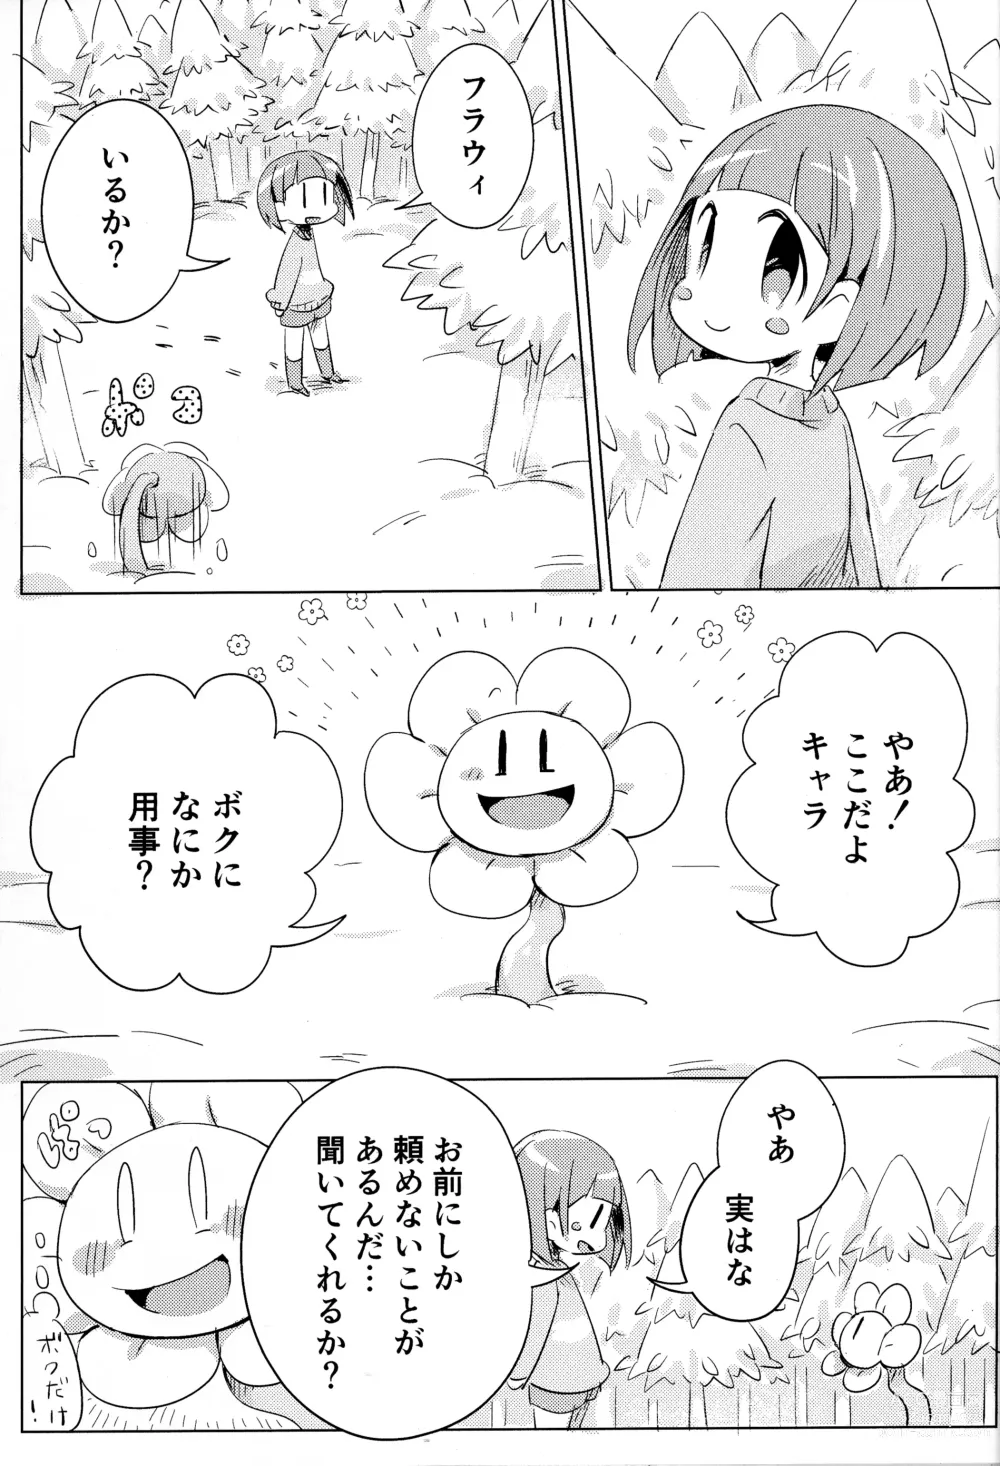 Page 6 of doujinshi Flowey, Daijoubu?